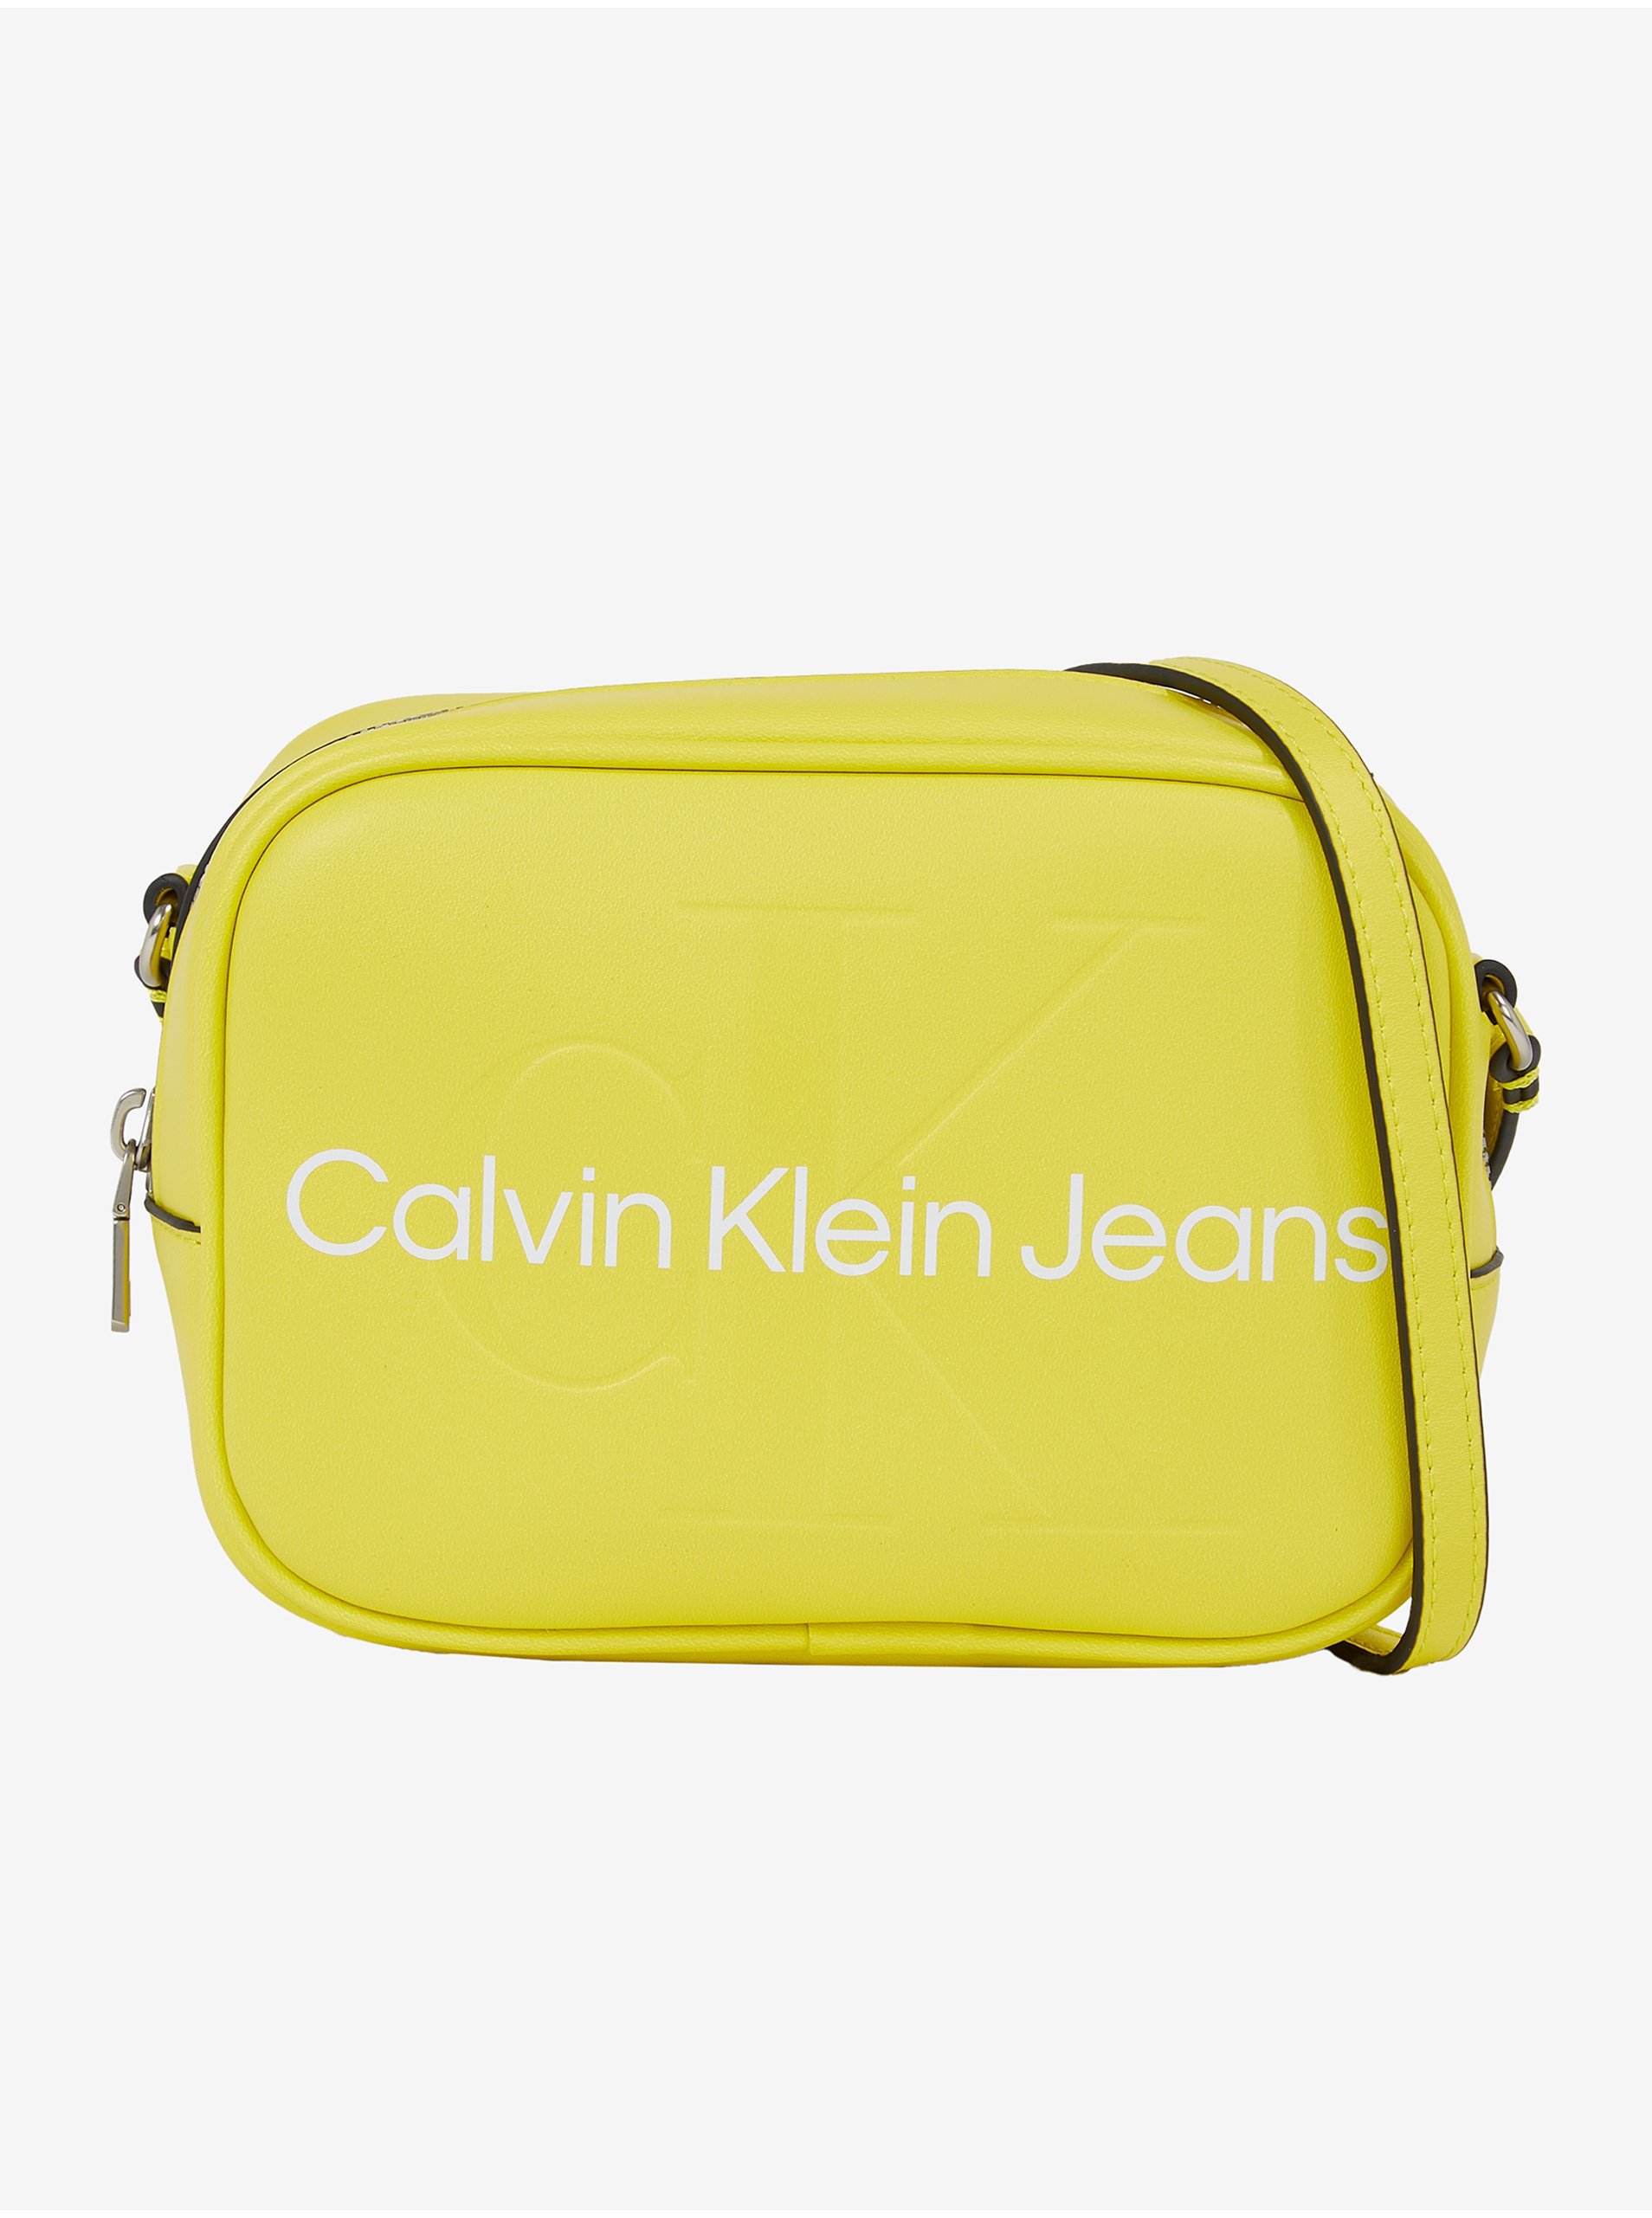 E-shop Žlutá dámská crossbody kabelka Calvin Klein Jeans